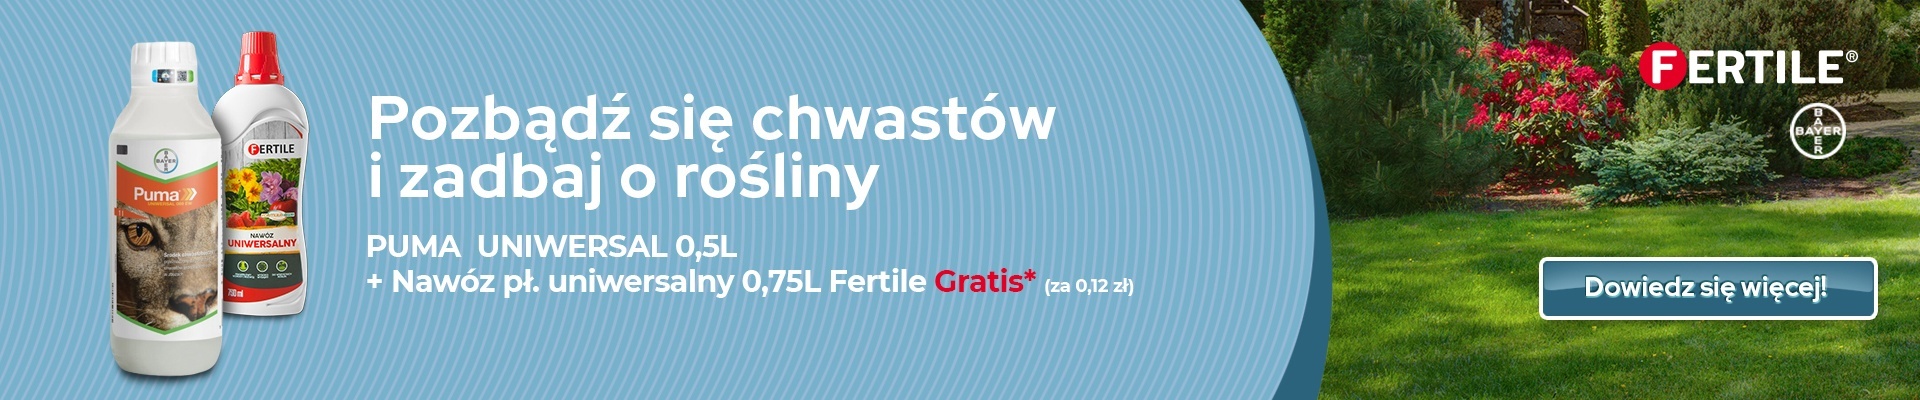 Puma Uniwersal 069 EW + Nawóz Fertile | Sklepogrodniczy.pl